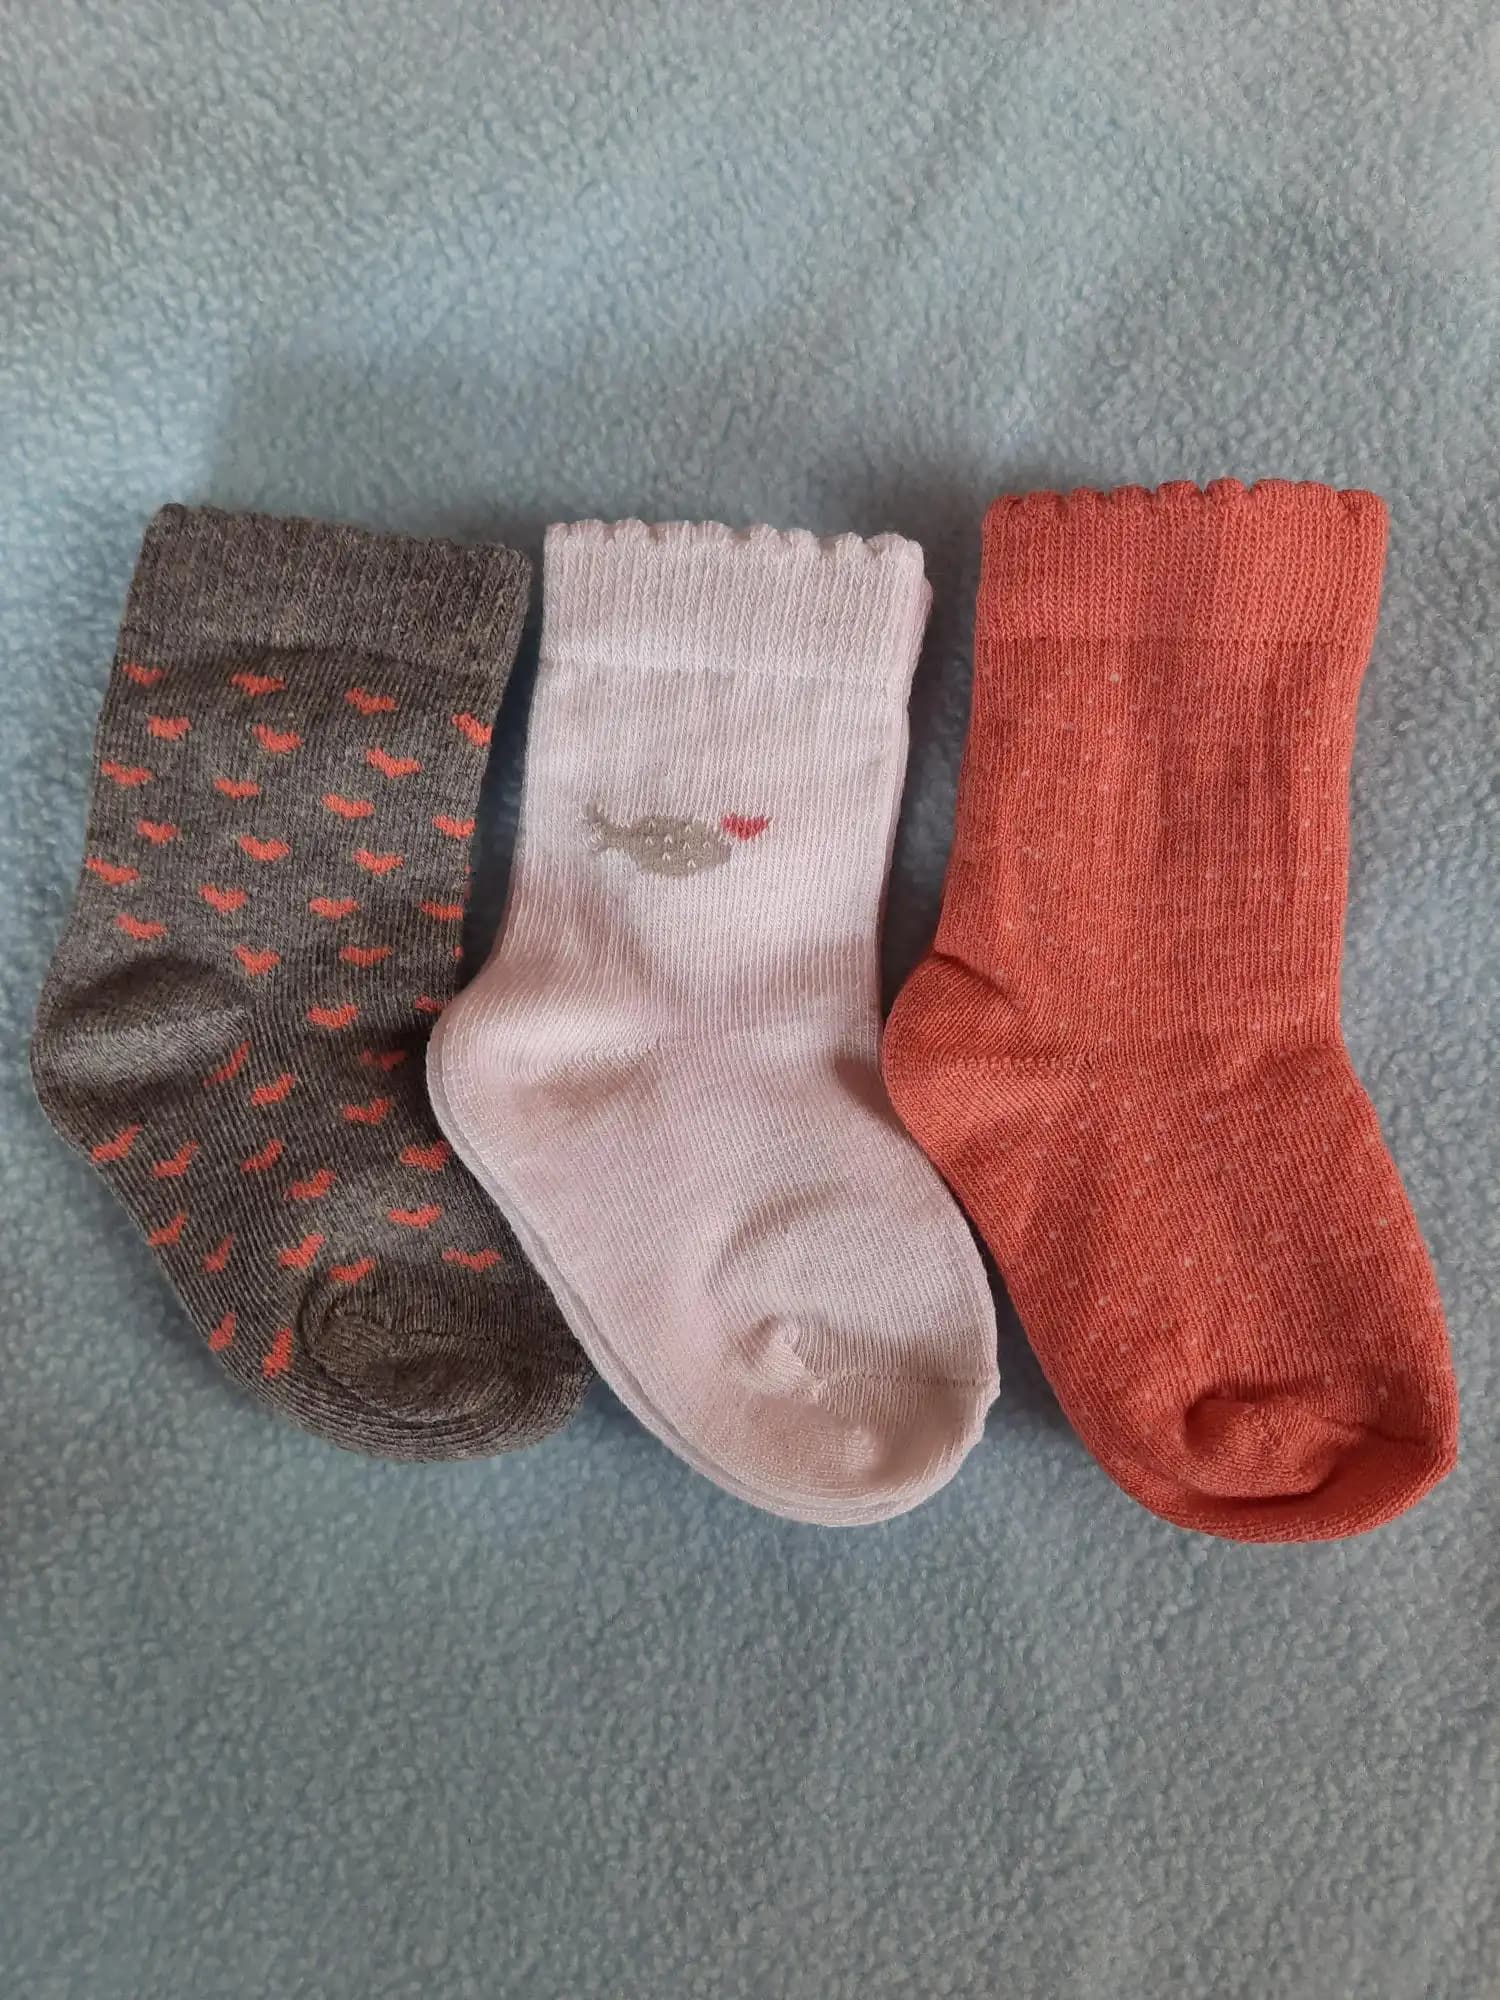 Baby Socks 0-6 Months | Elasticated & Antibacterial | Breathable, Shrinkable, Sweat & Wear Resistant | Unisex Slice of Orange | Pack of 3